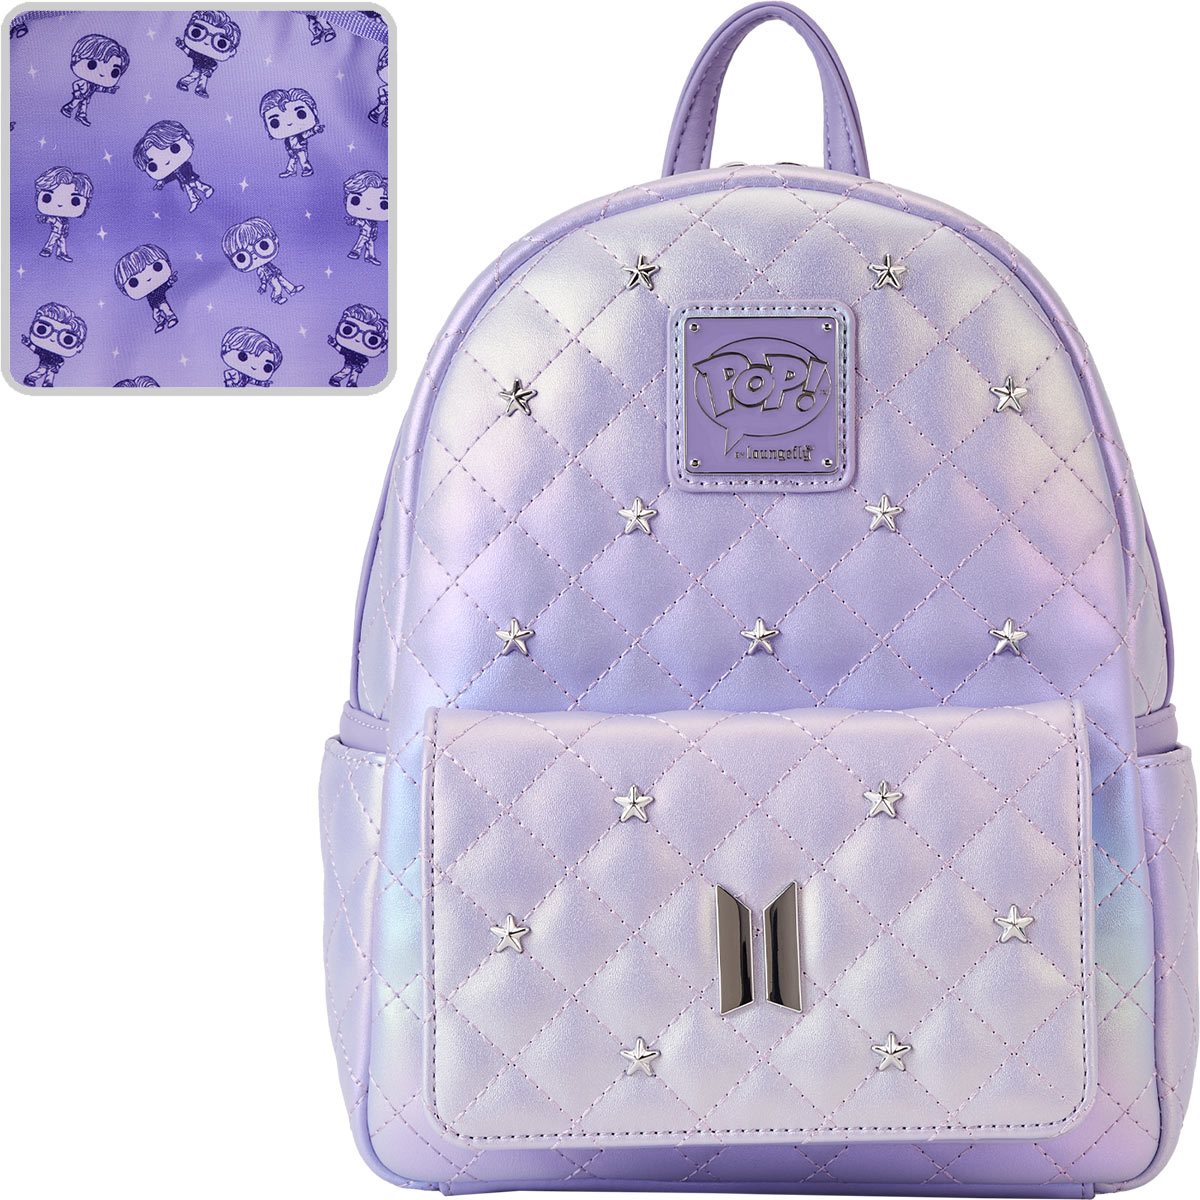 Source Backpack Bts fashion Kpop Bts backpack school bag for girls